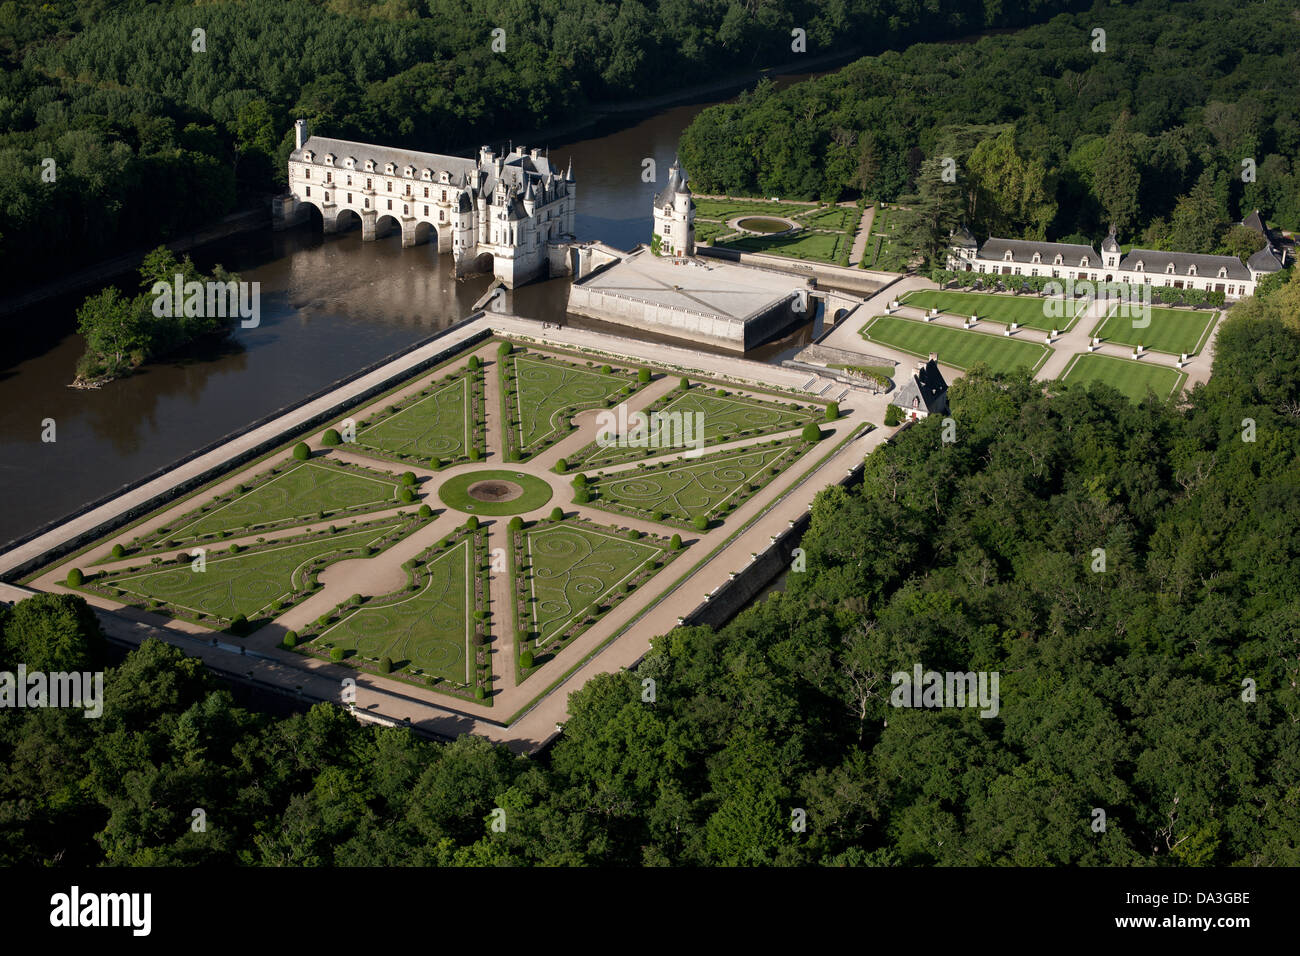 LUFTAUFNAHME. Schloss Chenonceau am Cher River, Diane de Poitiers Garden am linken Ufer. Chenonceaux, Centre-Val de Loire, Frankreich. Stockfoto